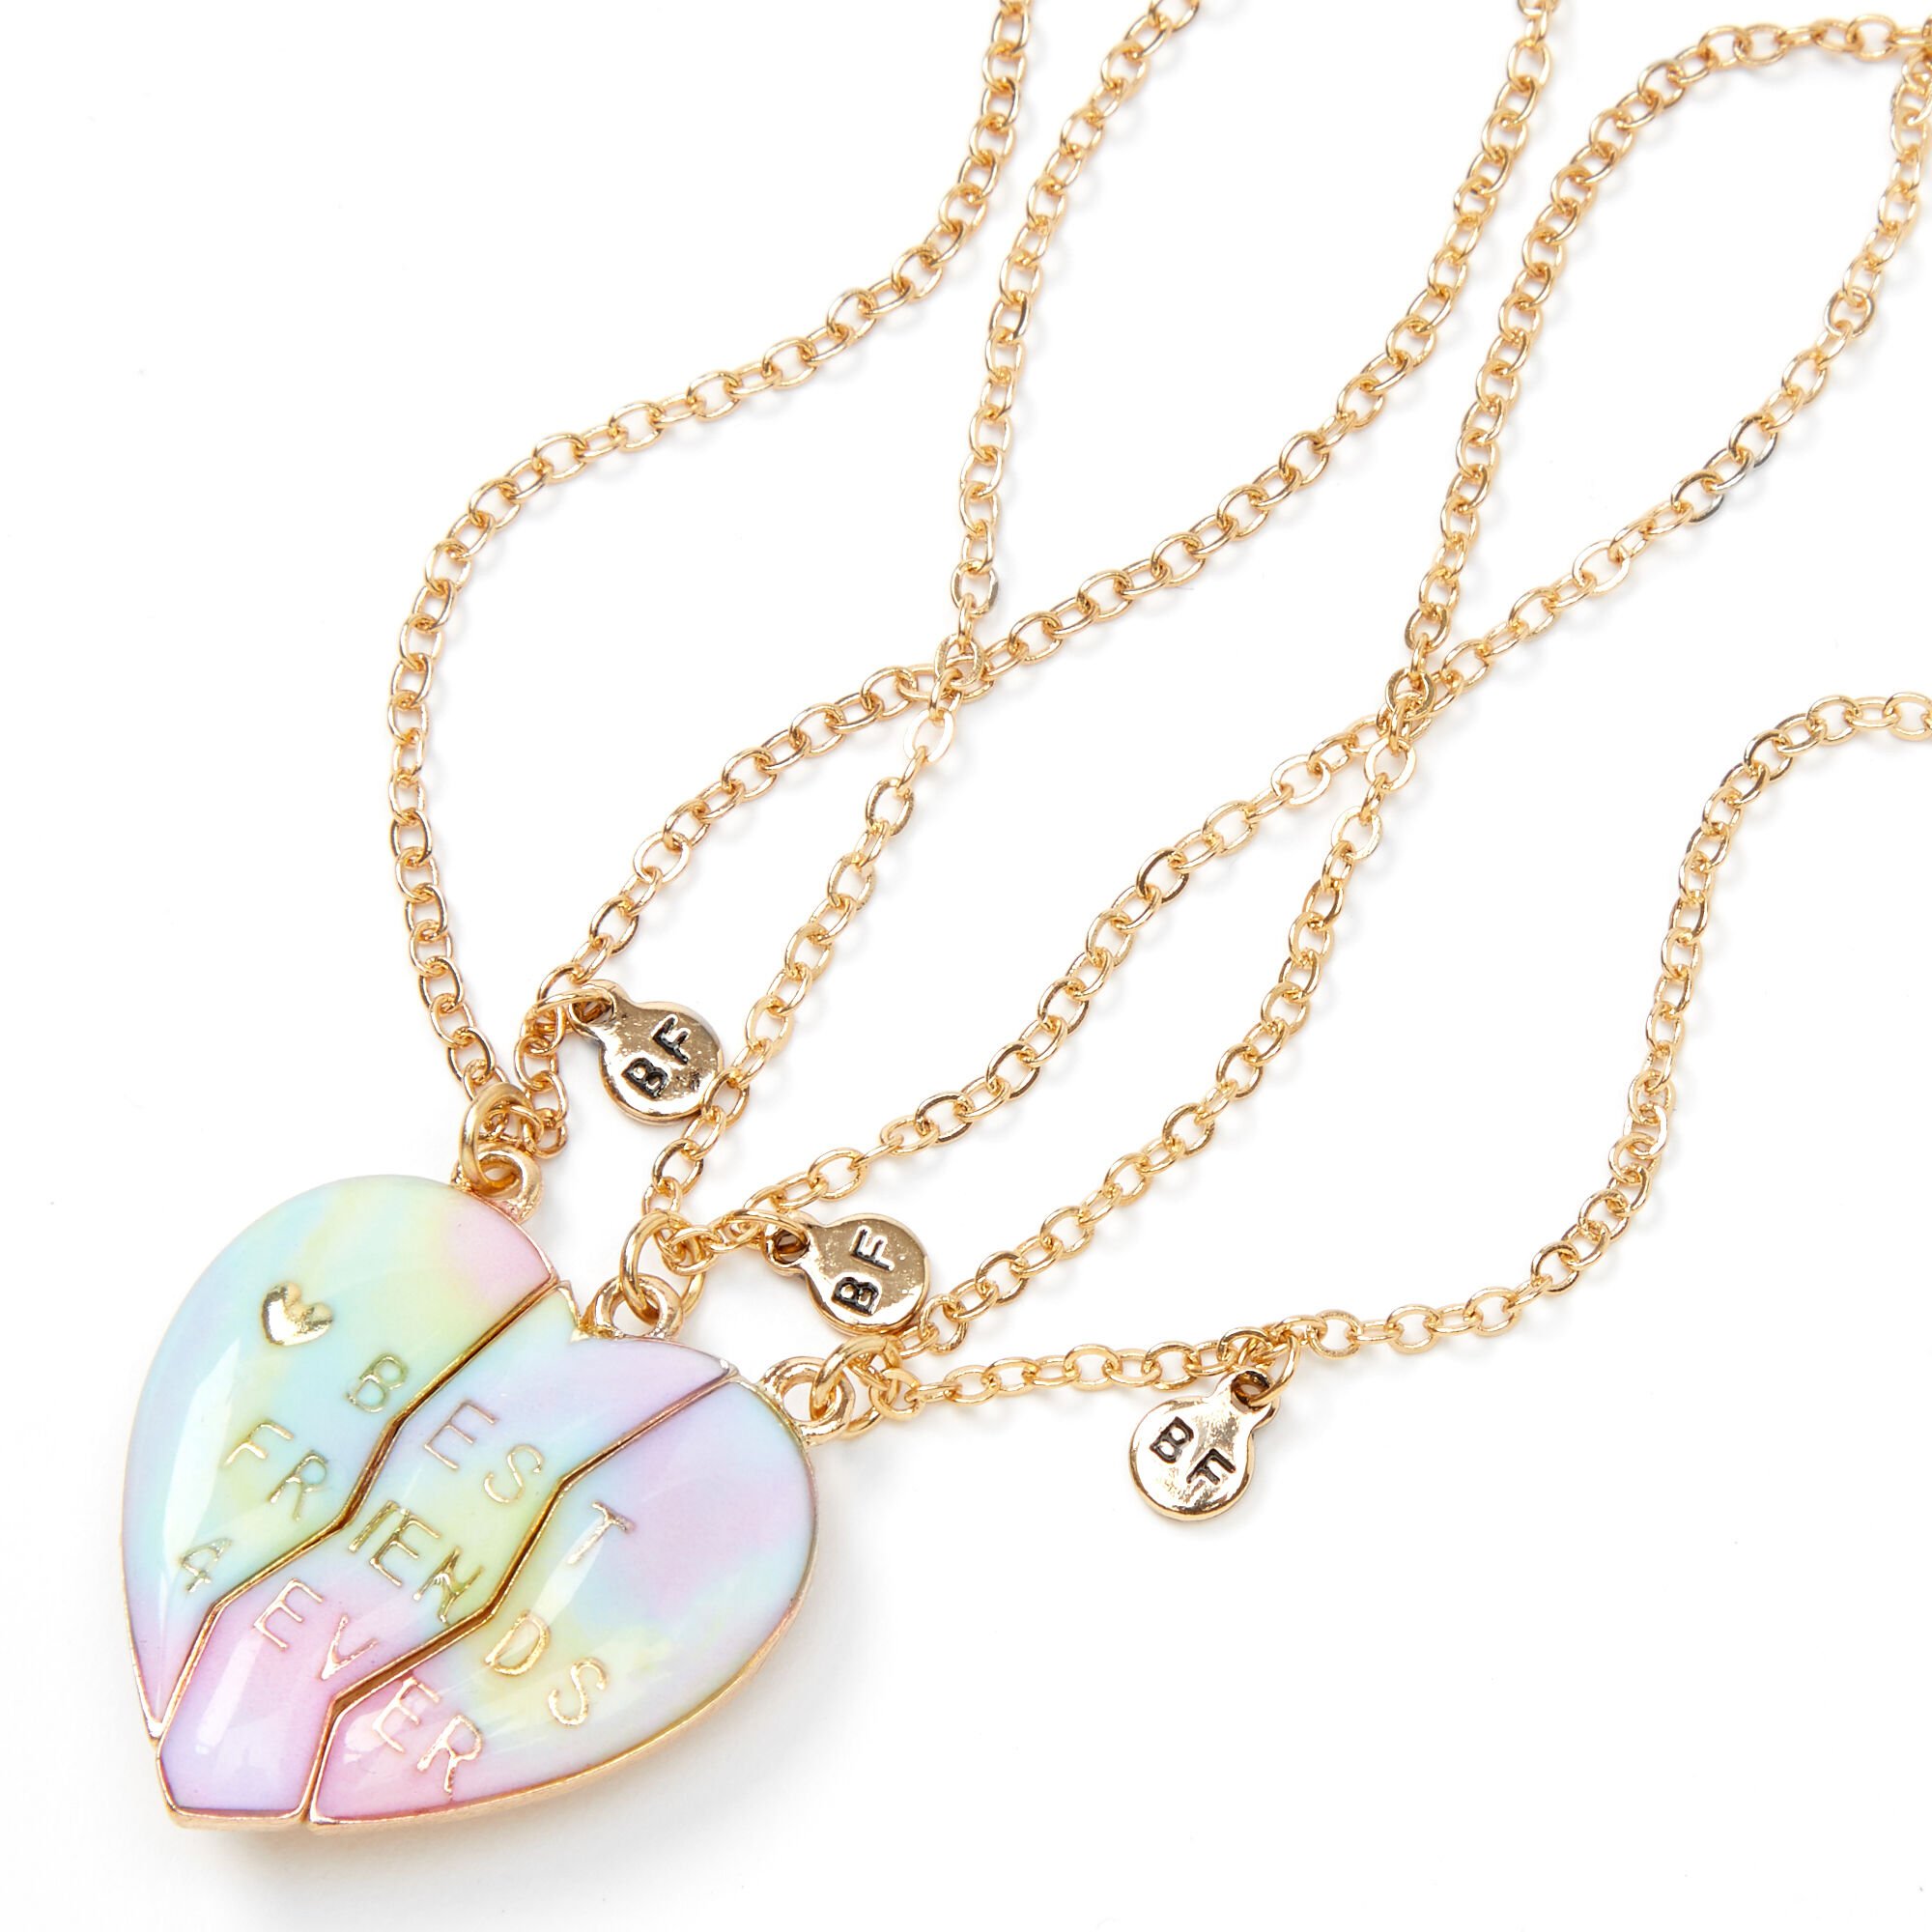 View Claires Best Friends Pastel Ombre Heart Pendant Necklaces 3 Pack Blue information